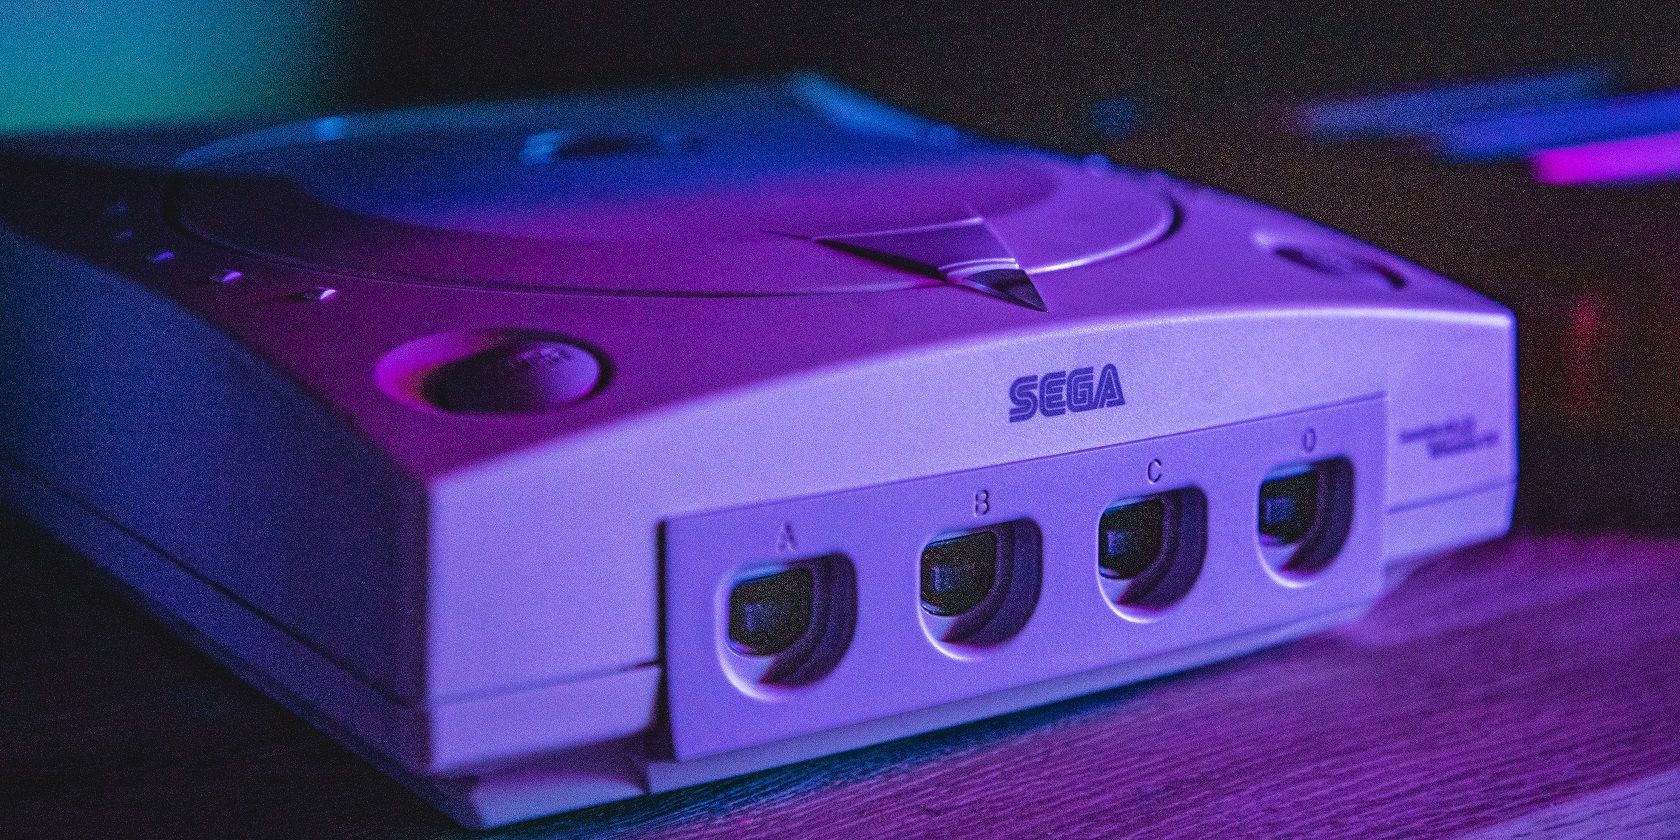 Sega console in a blue light background